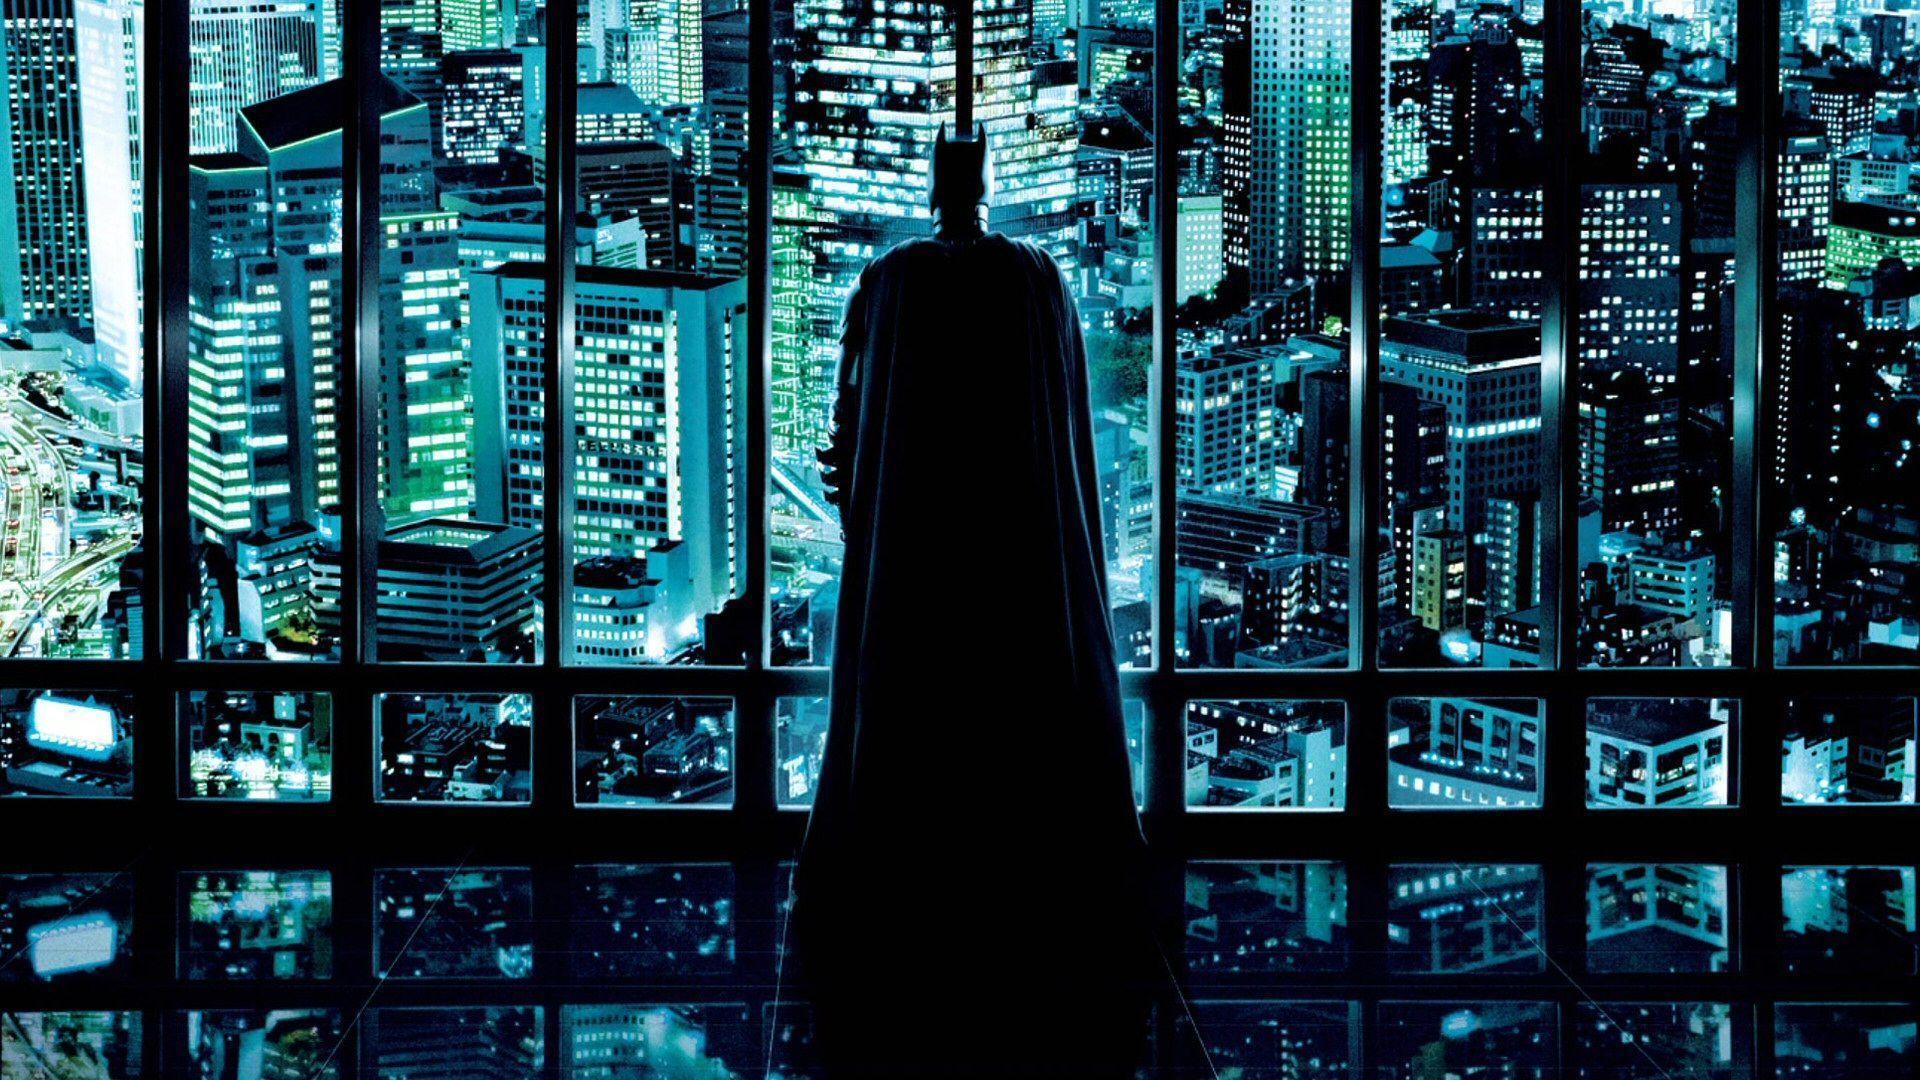 Dark Knight Wallpaper, Batman Movie Wallpaper